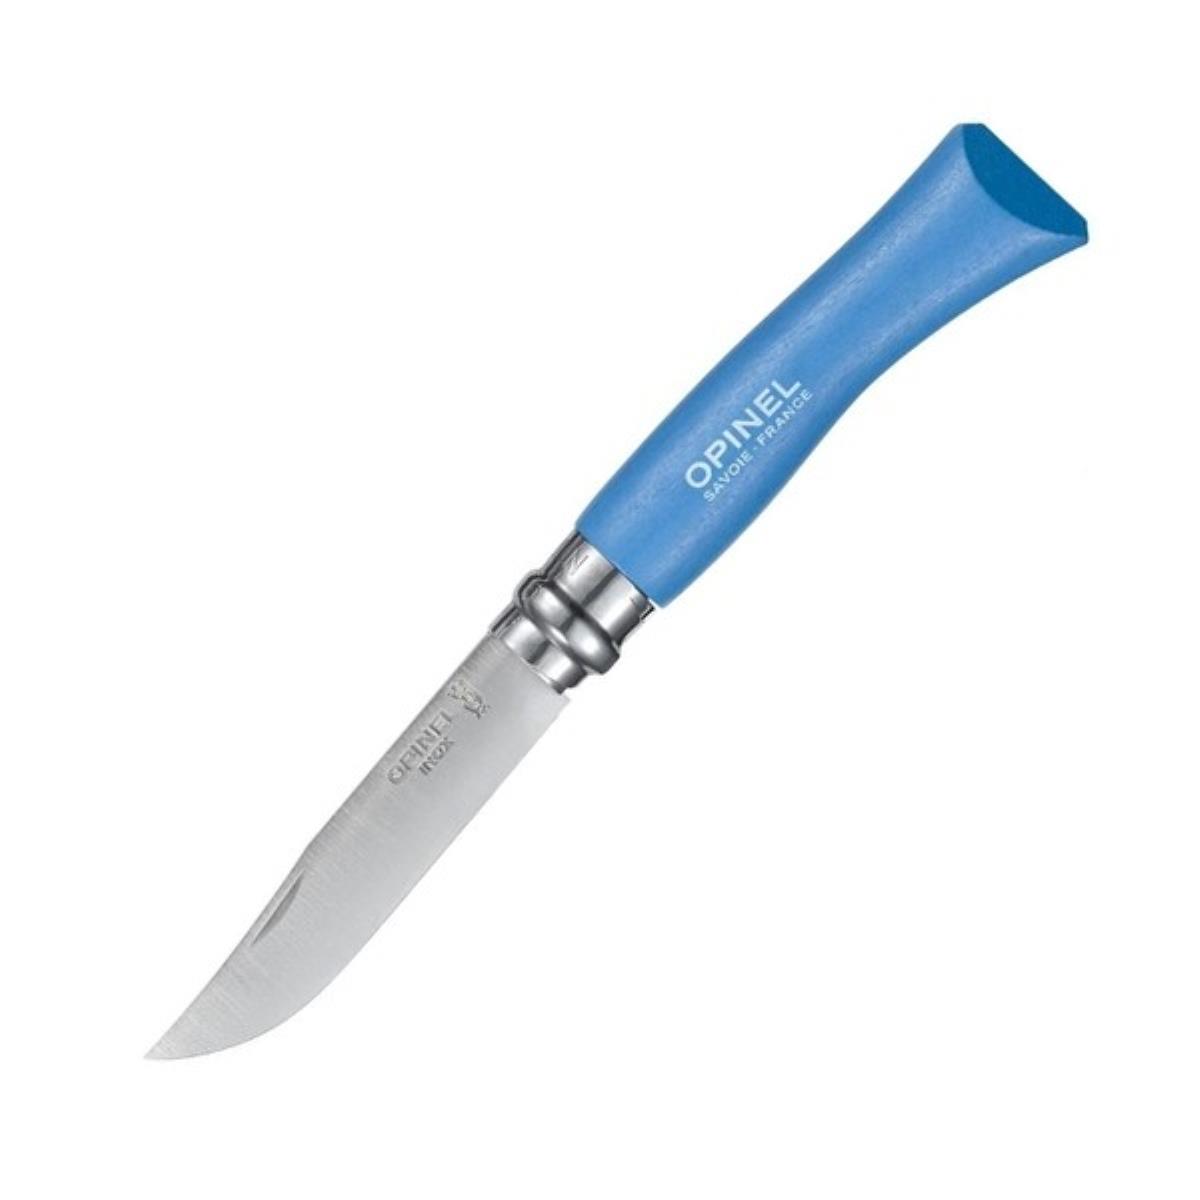 Нож №7 VRI Colored Tradition Sky blue нерж. сталь, рукоять граб, длина клинка8см (голубой) OPINEL набор из 6 ти шампуров зверь граб